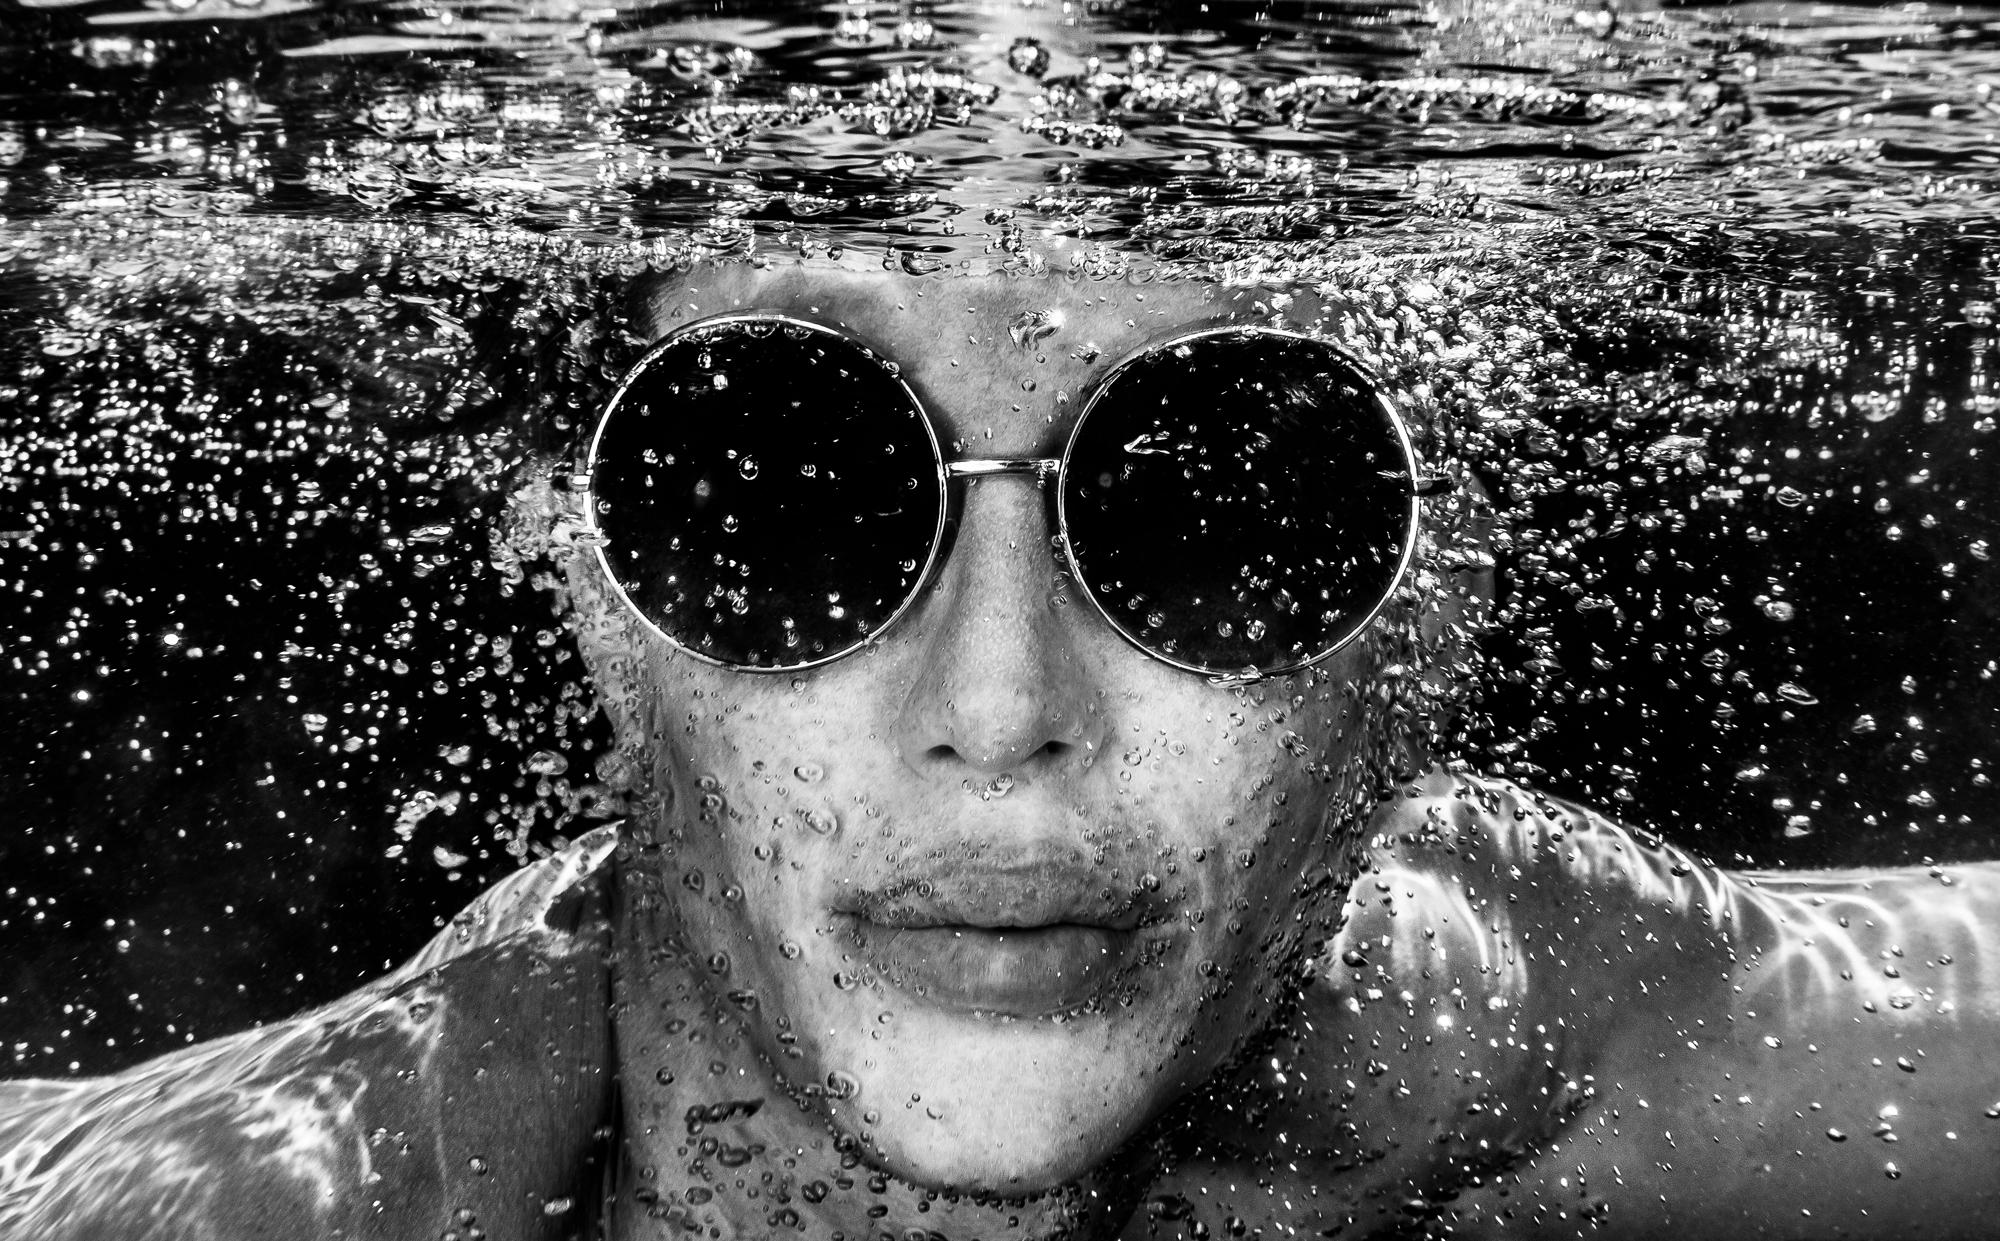 Portrait Photograph Alex Sher - Rounds  - photographie sous-marine en noir et blanc - tirage pigmentaire d'archives 35x56".